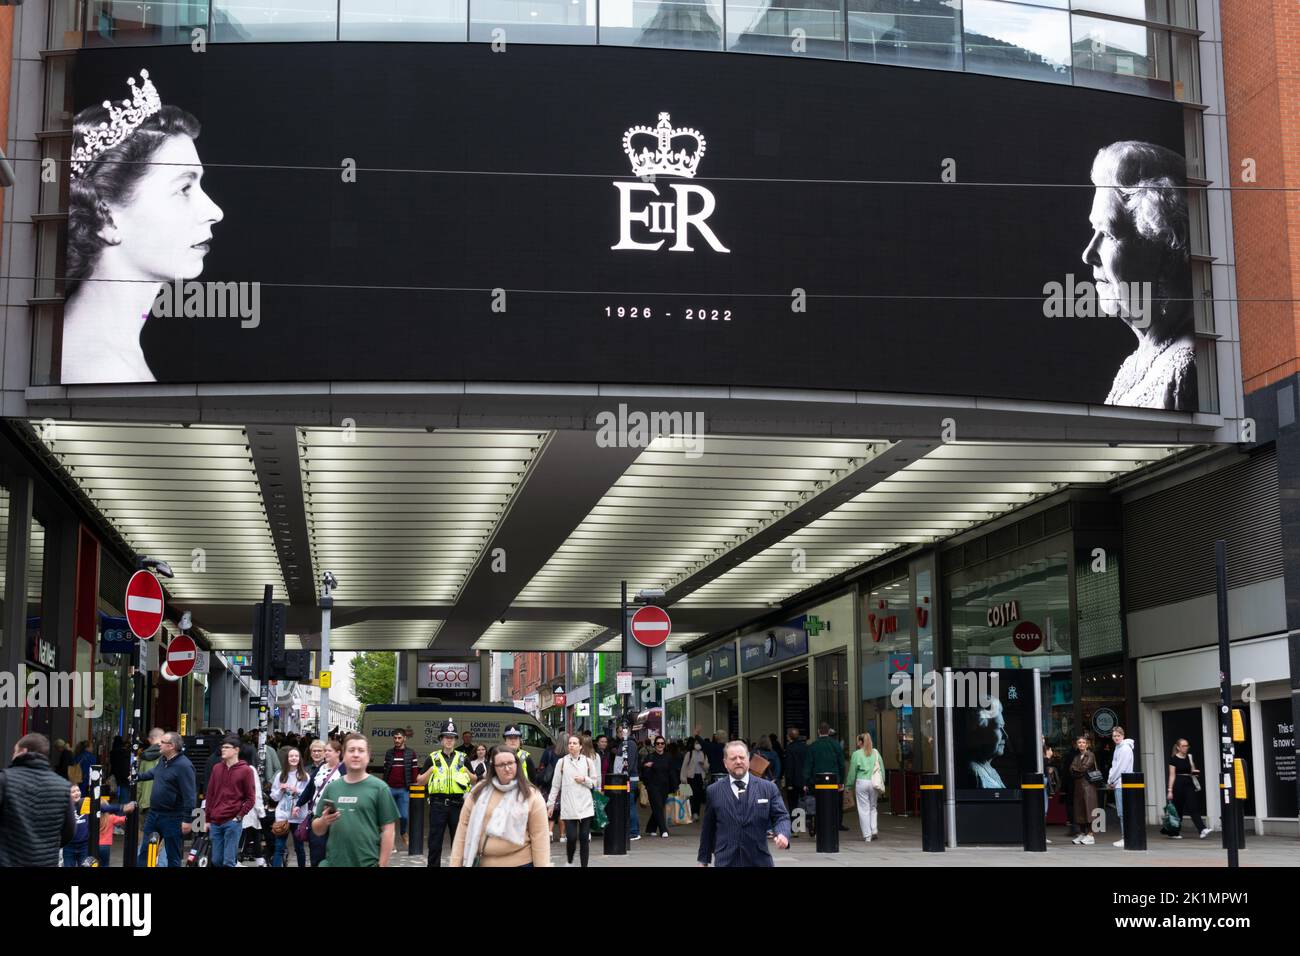 Market Street Manchester. Affichage électronique montrant la reine Elizabeth II, jeune et ancienne Veille des funérailles du monarque. Banque D'Images